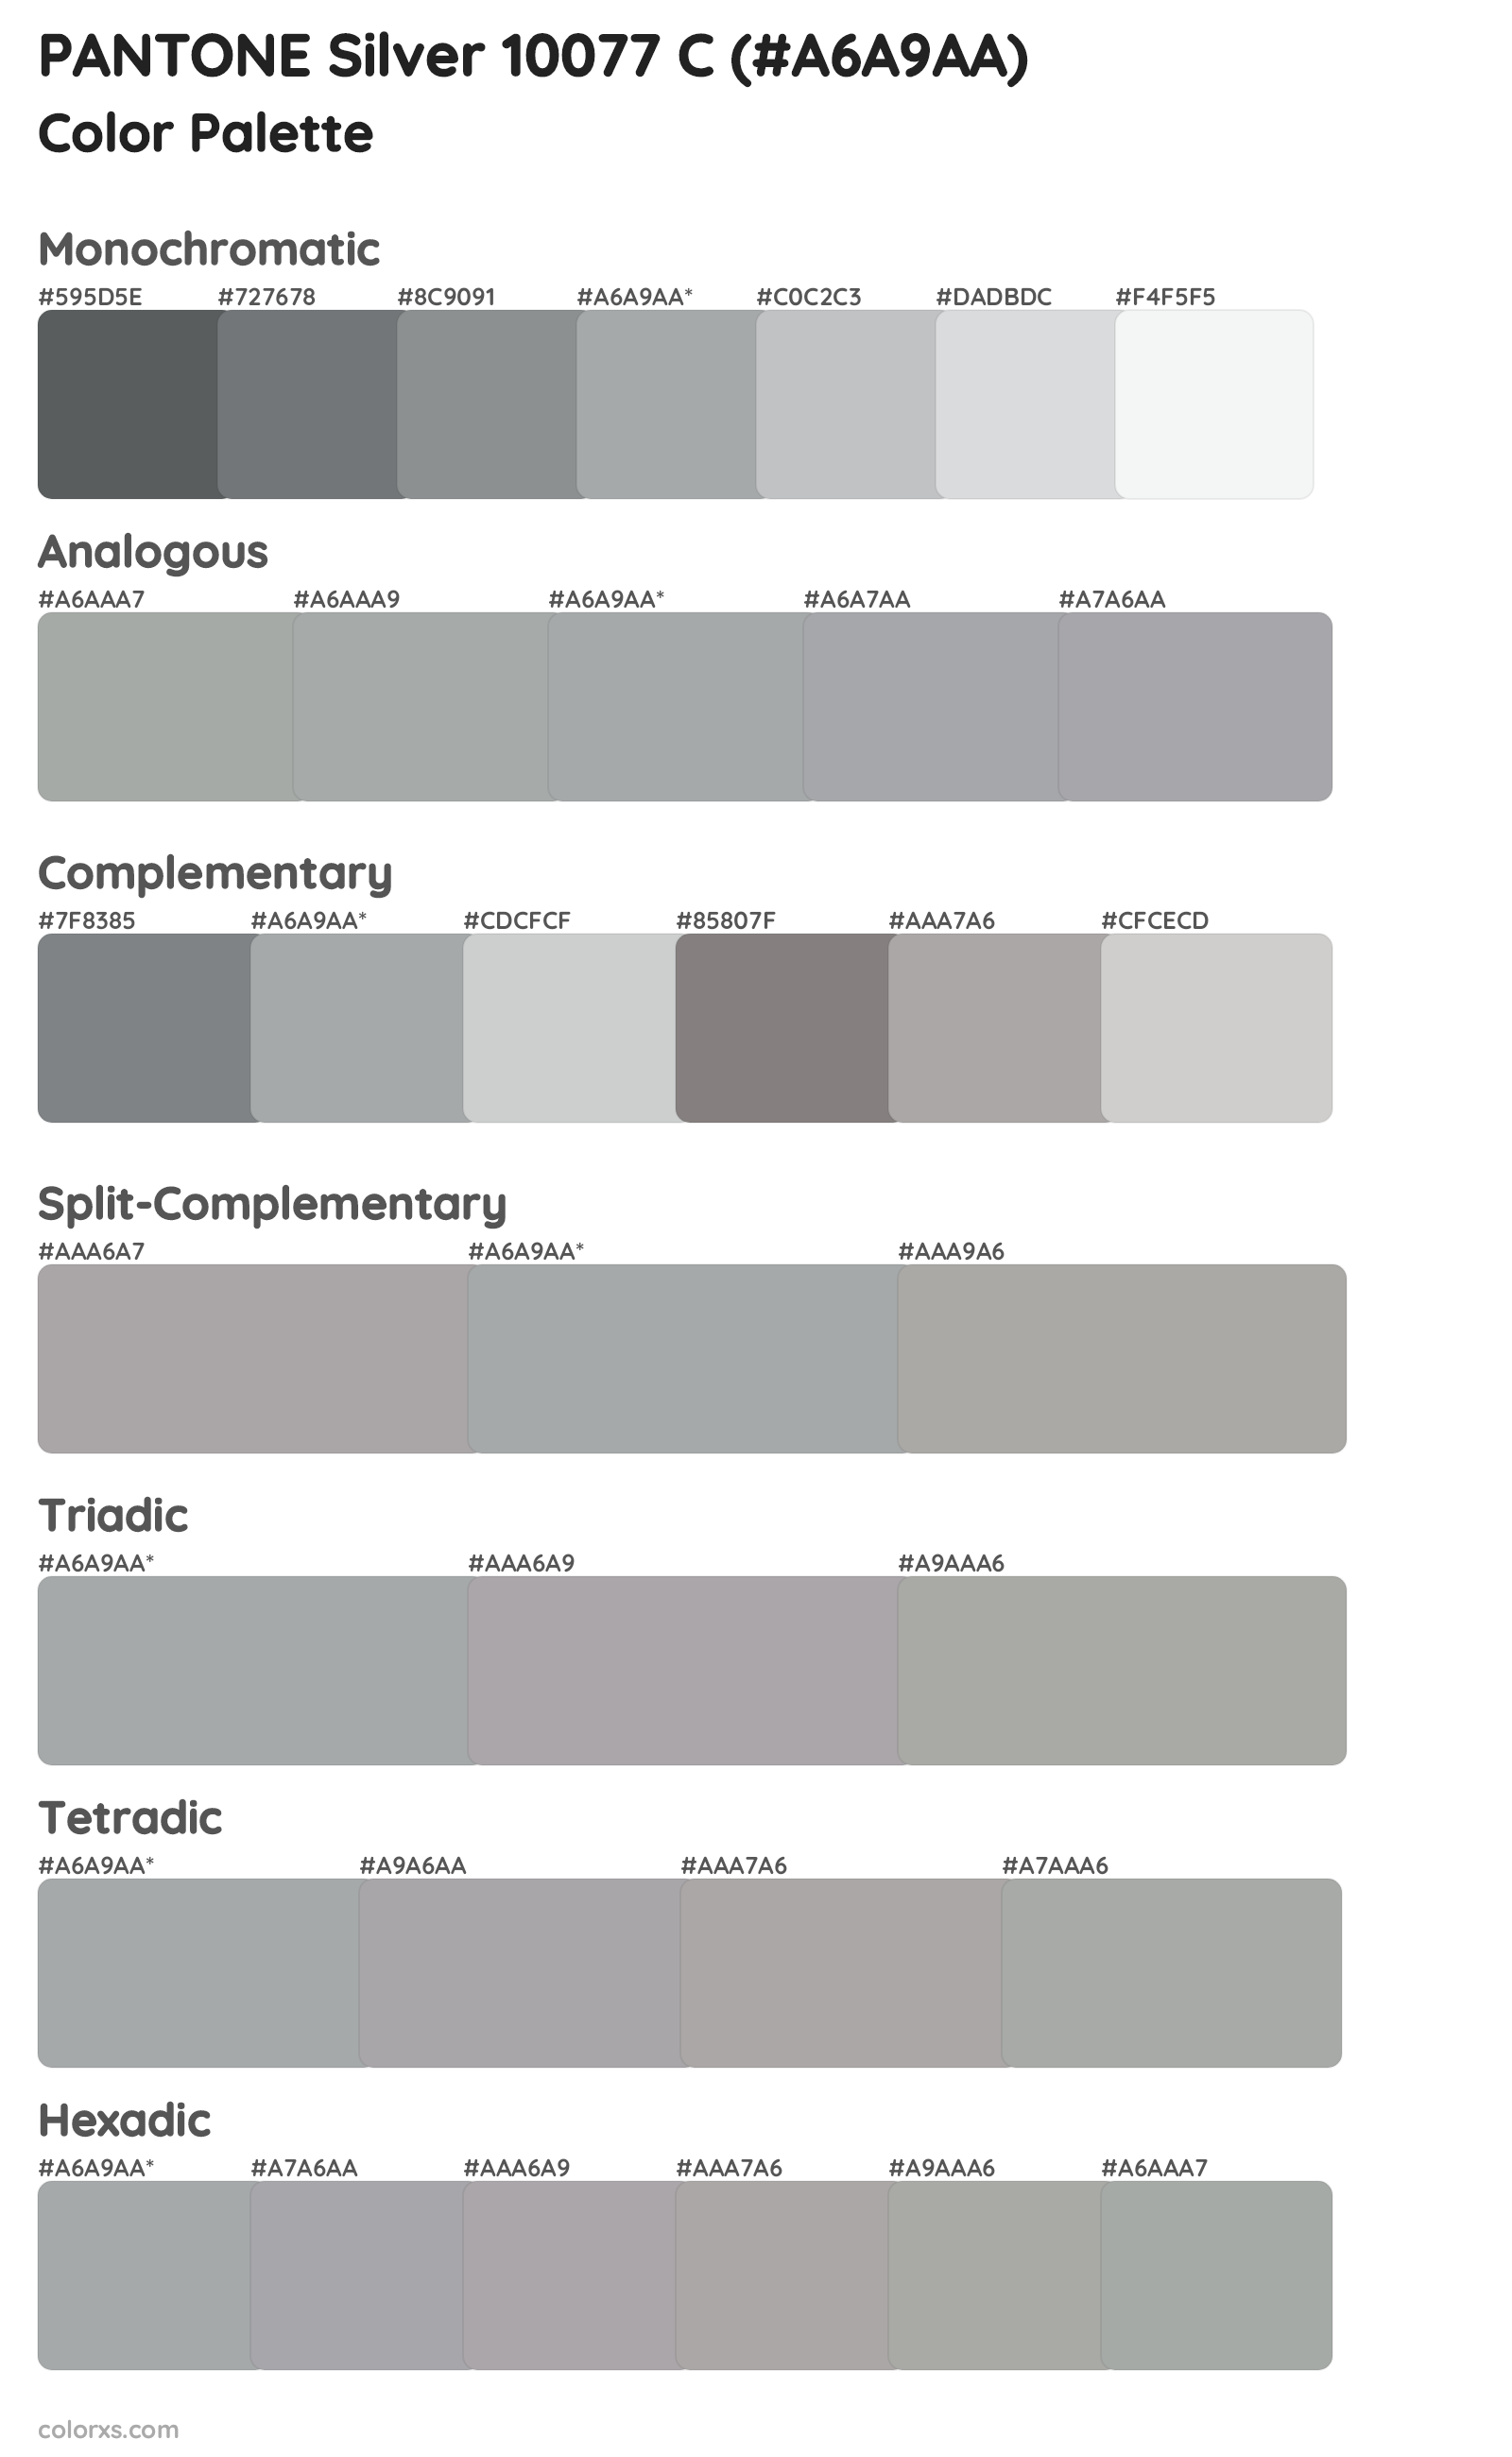 PANTONE Silver 10077 C Color Scheme Palettes